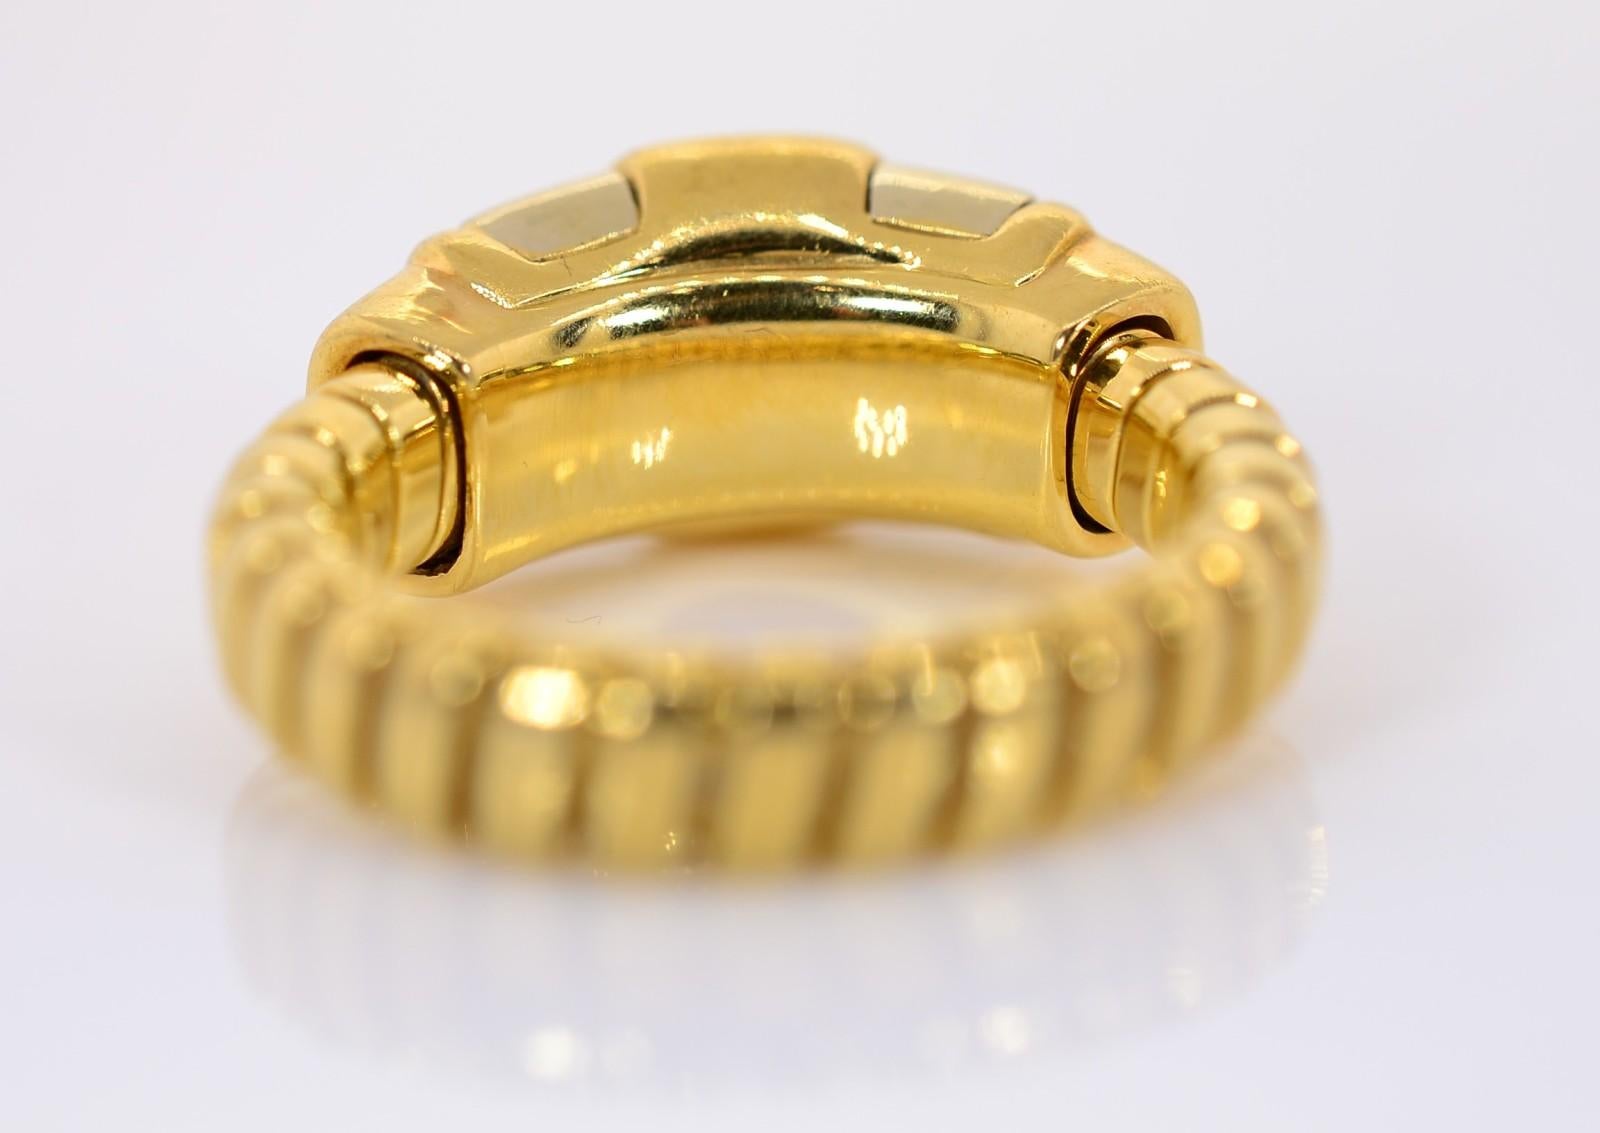 Women's Bvlgari Tubogas Tourmaline Gold Ring